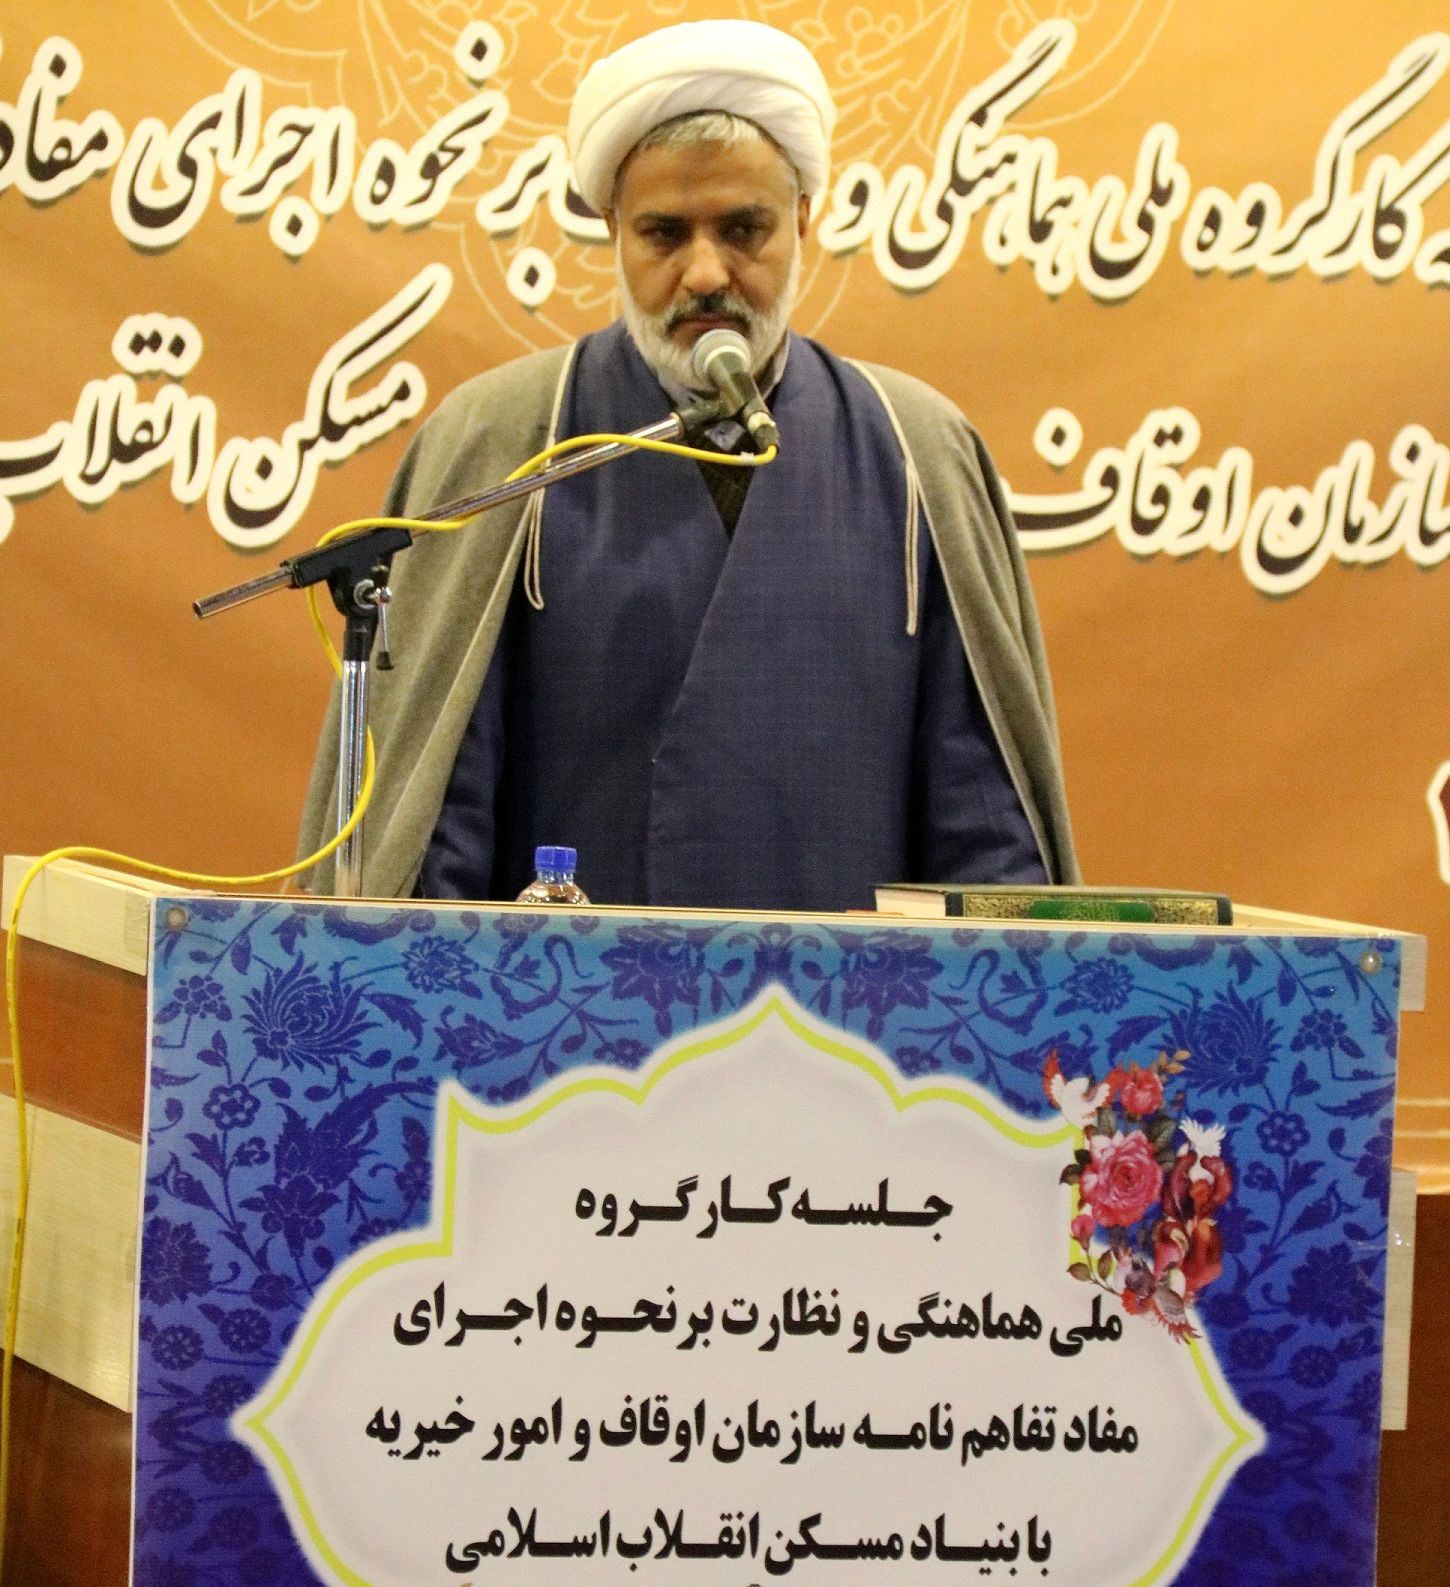 بیش از 15 هزار موقوفه در استان اصفهان به ثبت رسیده است